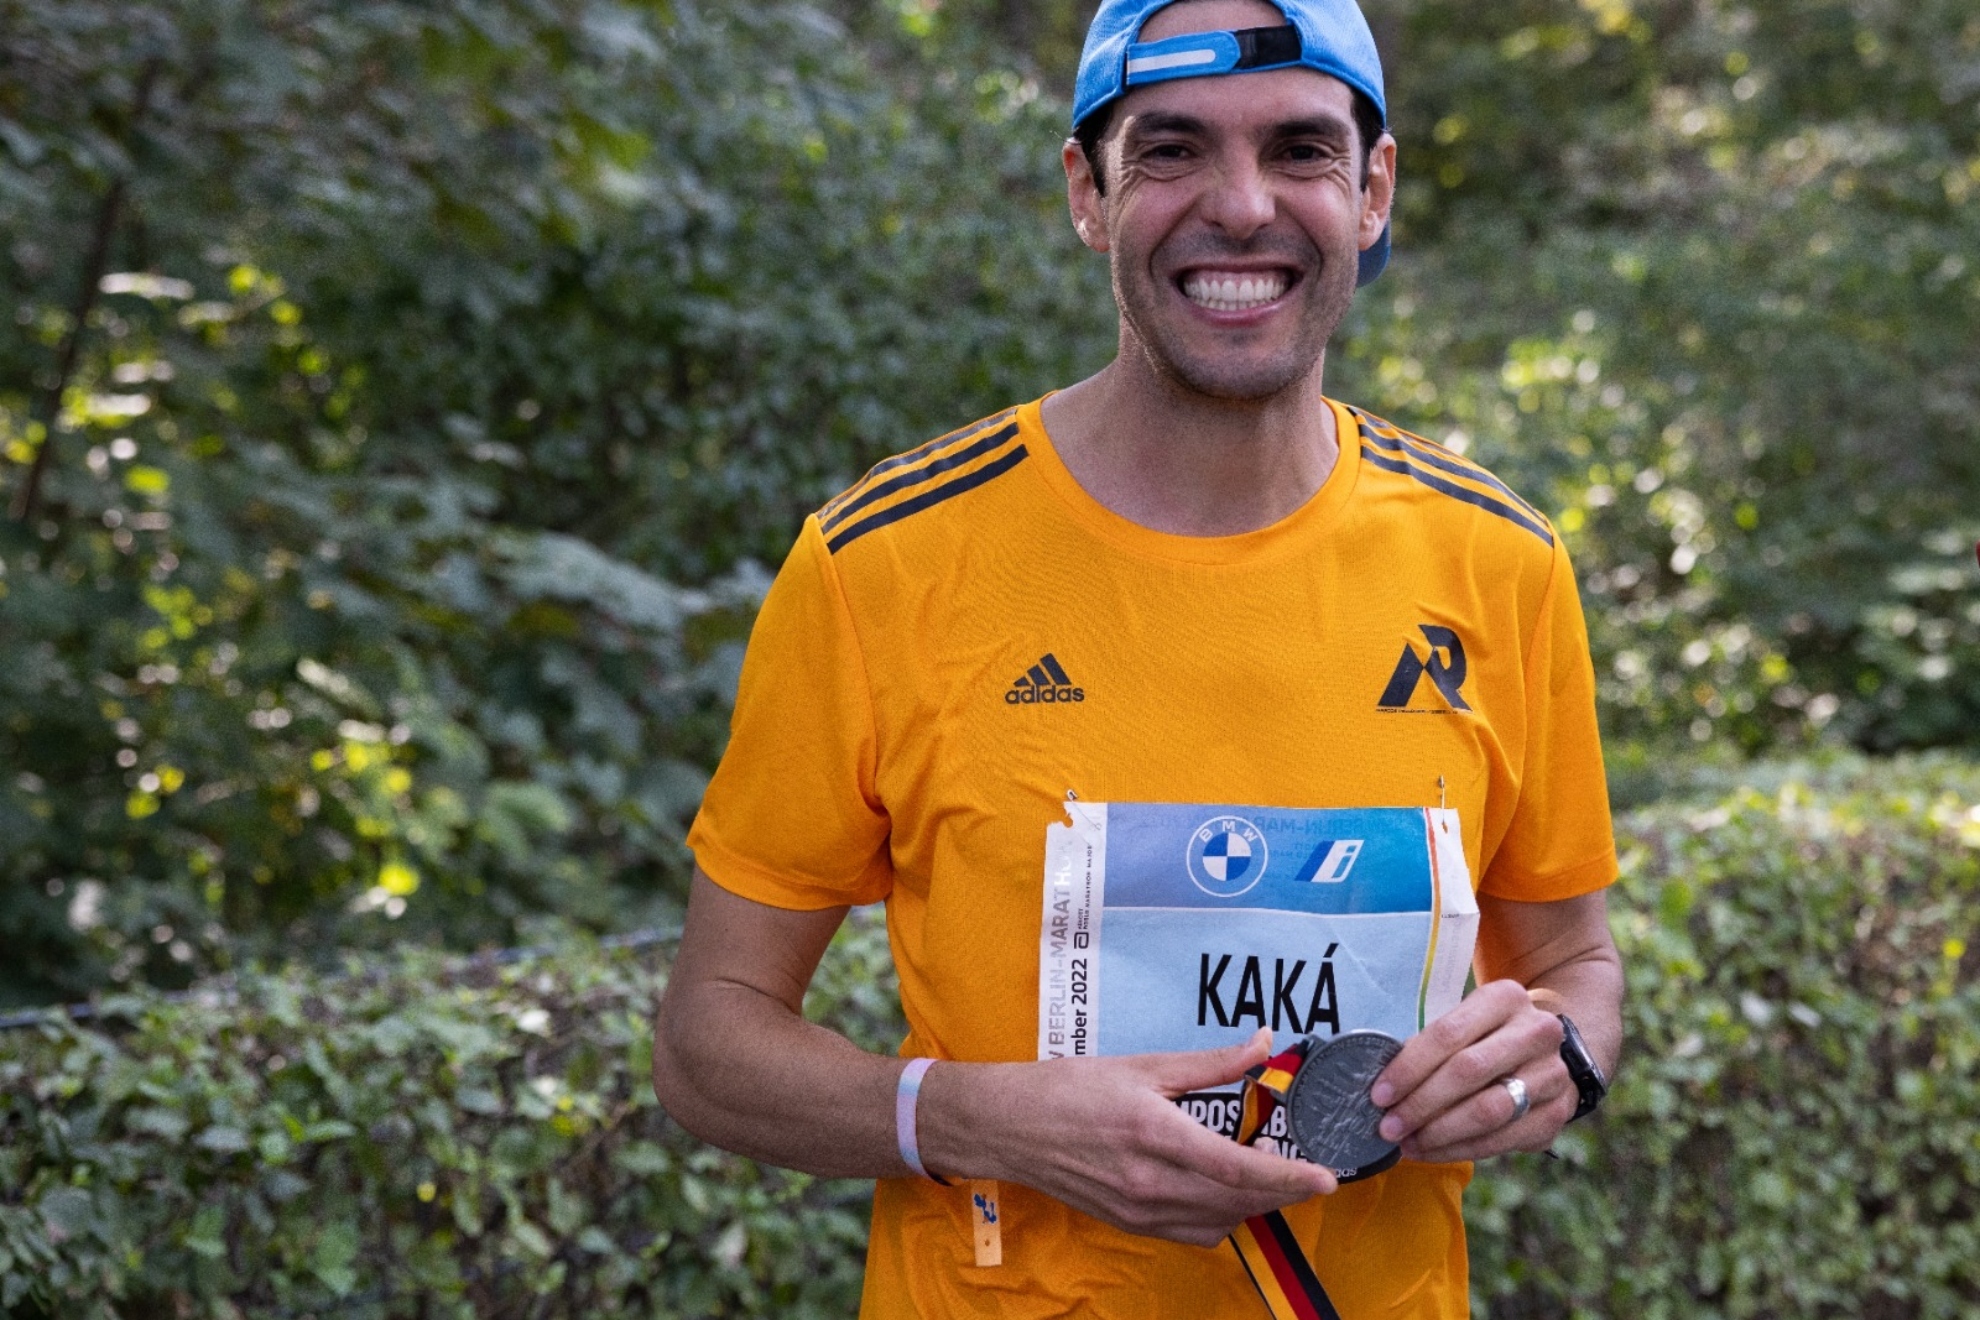 La felicidad de Kaká al completar el Maratón de Berlín